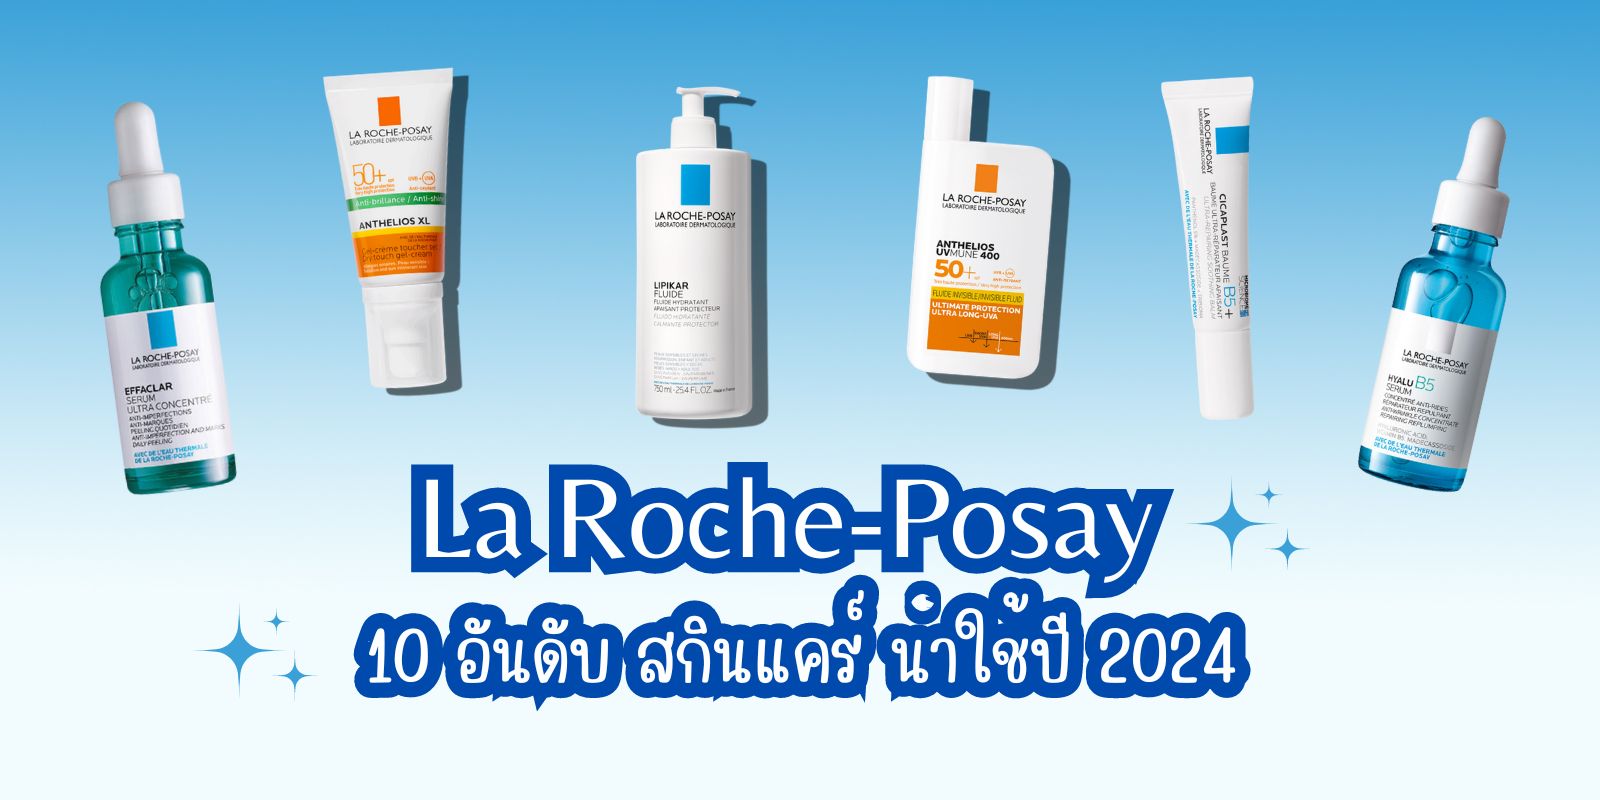 10 อันดับ สกินแคร์ La Roche-Posay น่าใช้ ประจำปี 2024